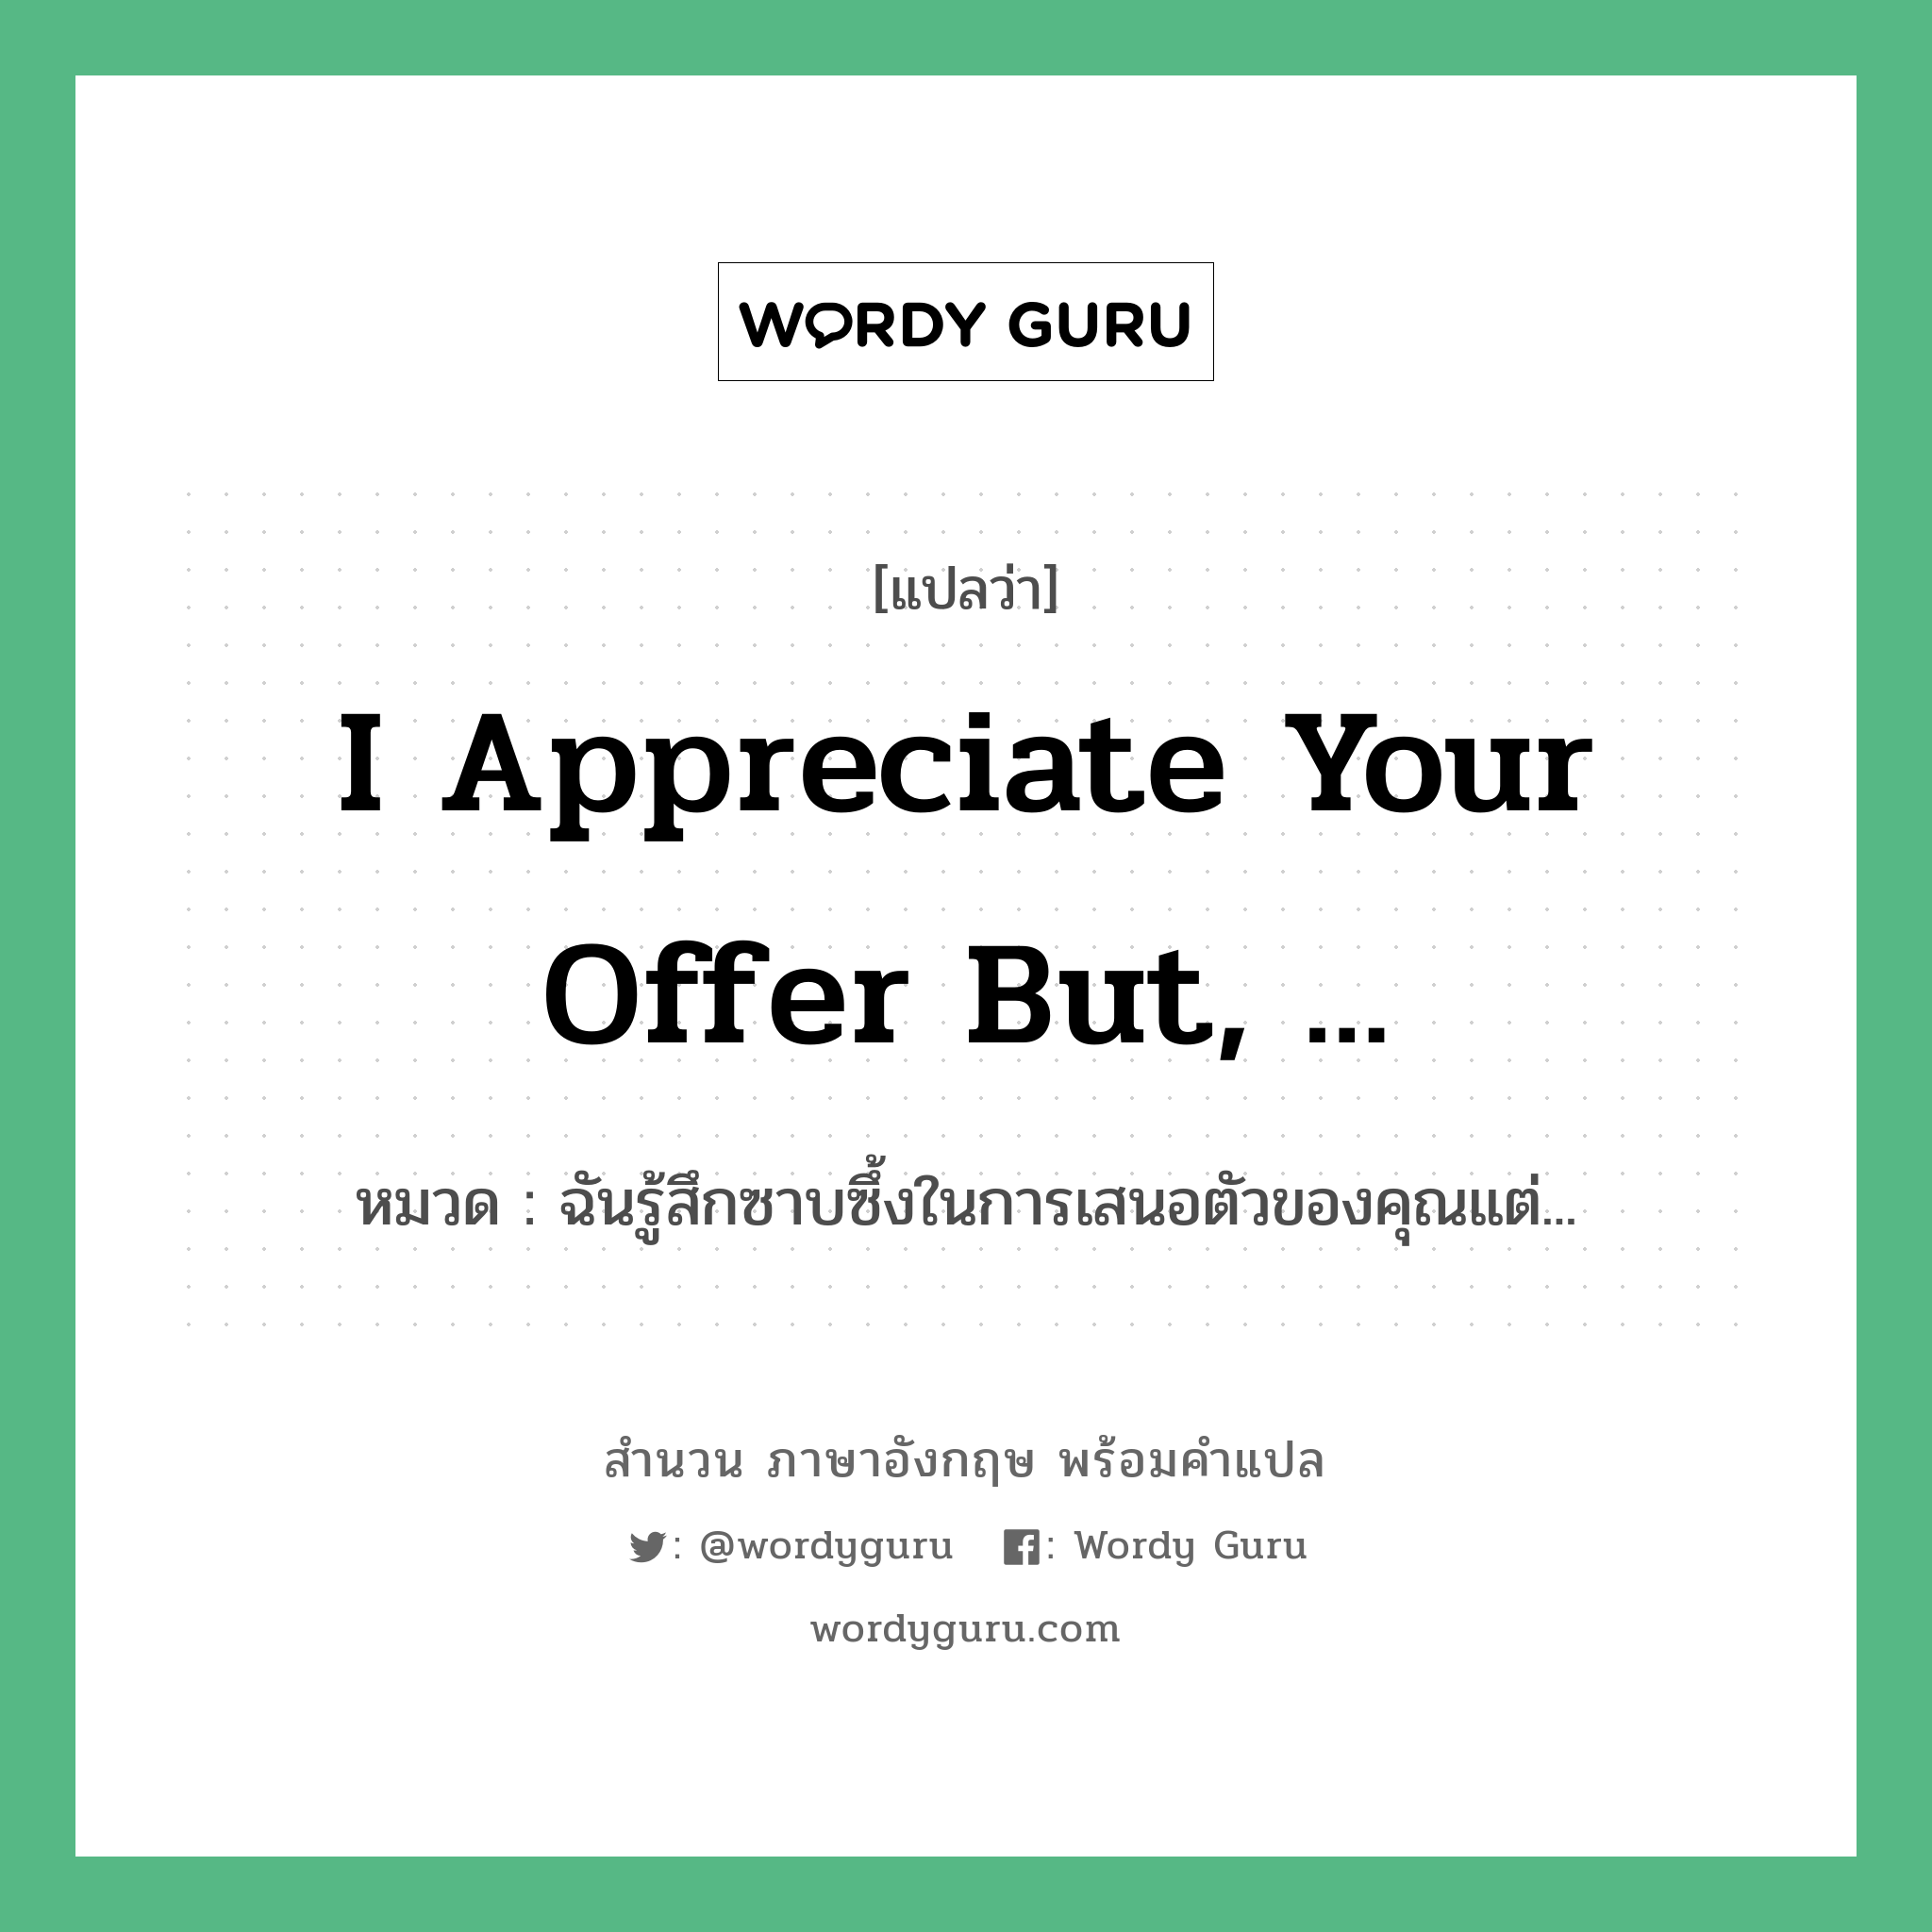 I appreciate your offer but, ... แปลว่า?, สำนวนภาษาอังกฤษ I appreciate your offer but, ... หมวด ฉันรู้สึกซาบซึ้งในการเสนอตัวของคุณแต่...